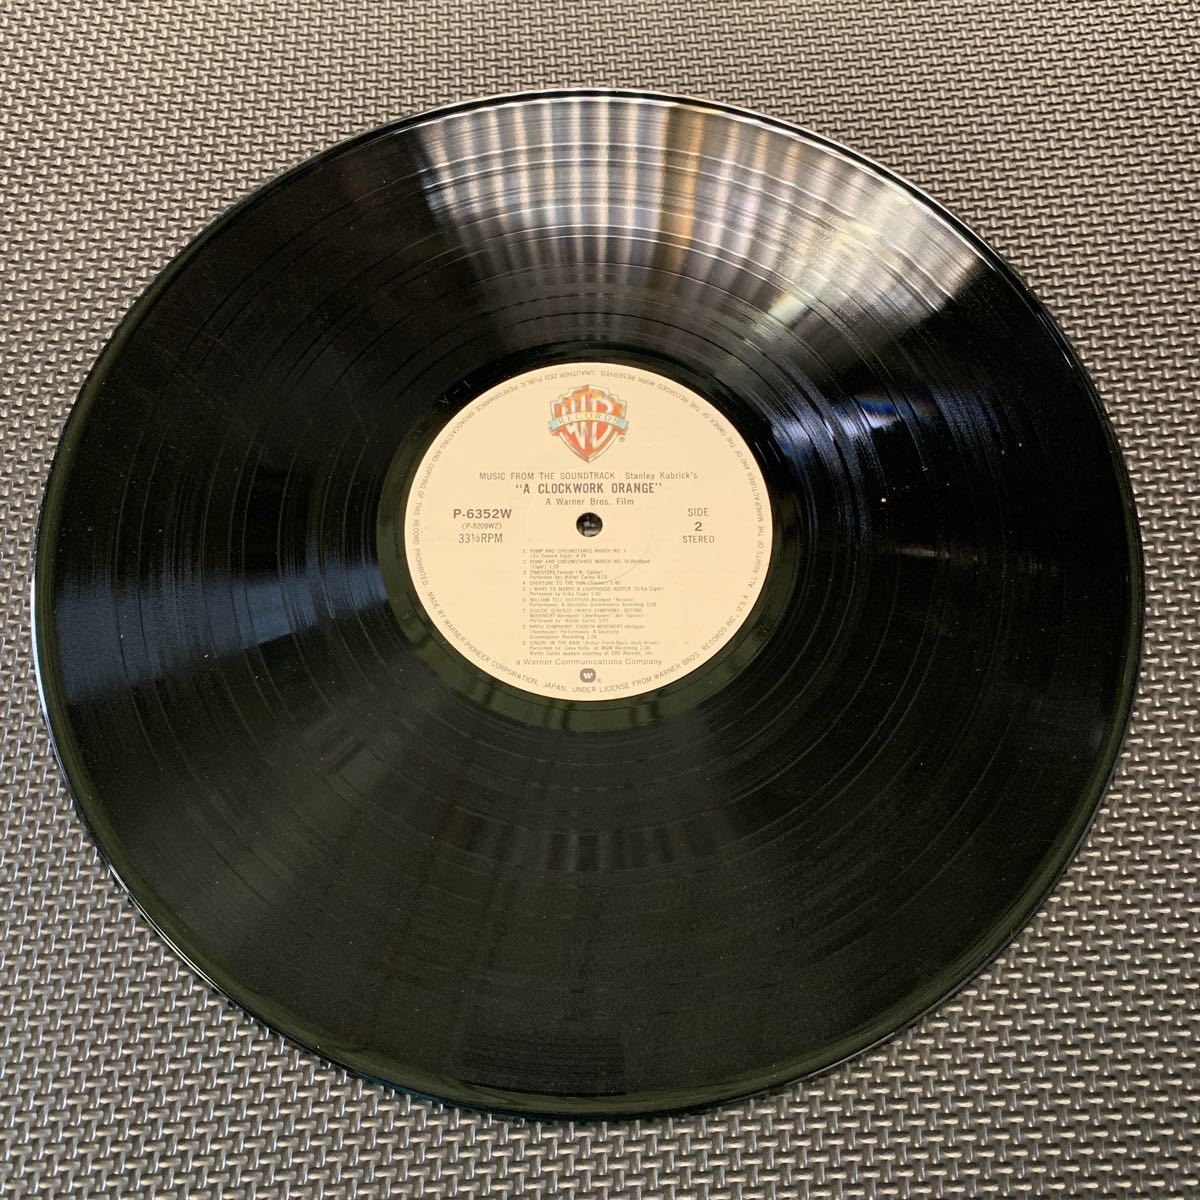 帯付・時計じかけのオレンジ・Stanley Kubrick's A Clockwork Orange・Warner Bros. Records・P-6352W・Soundtrack・OST・サントラ_画像4